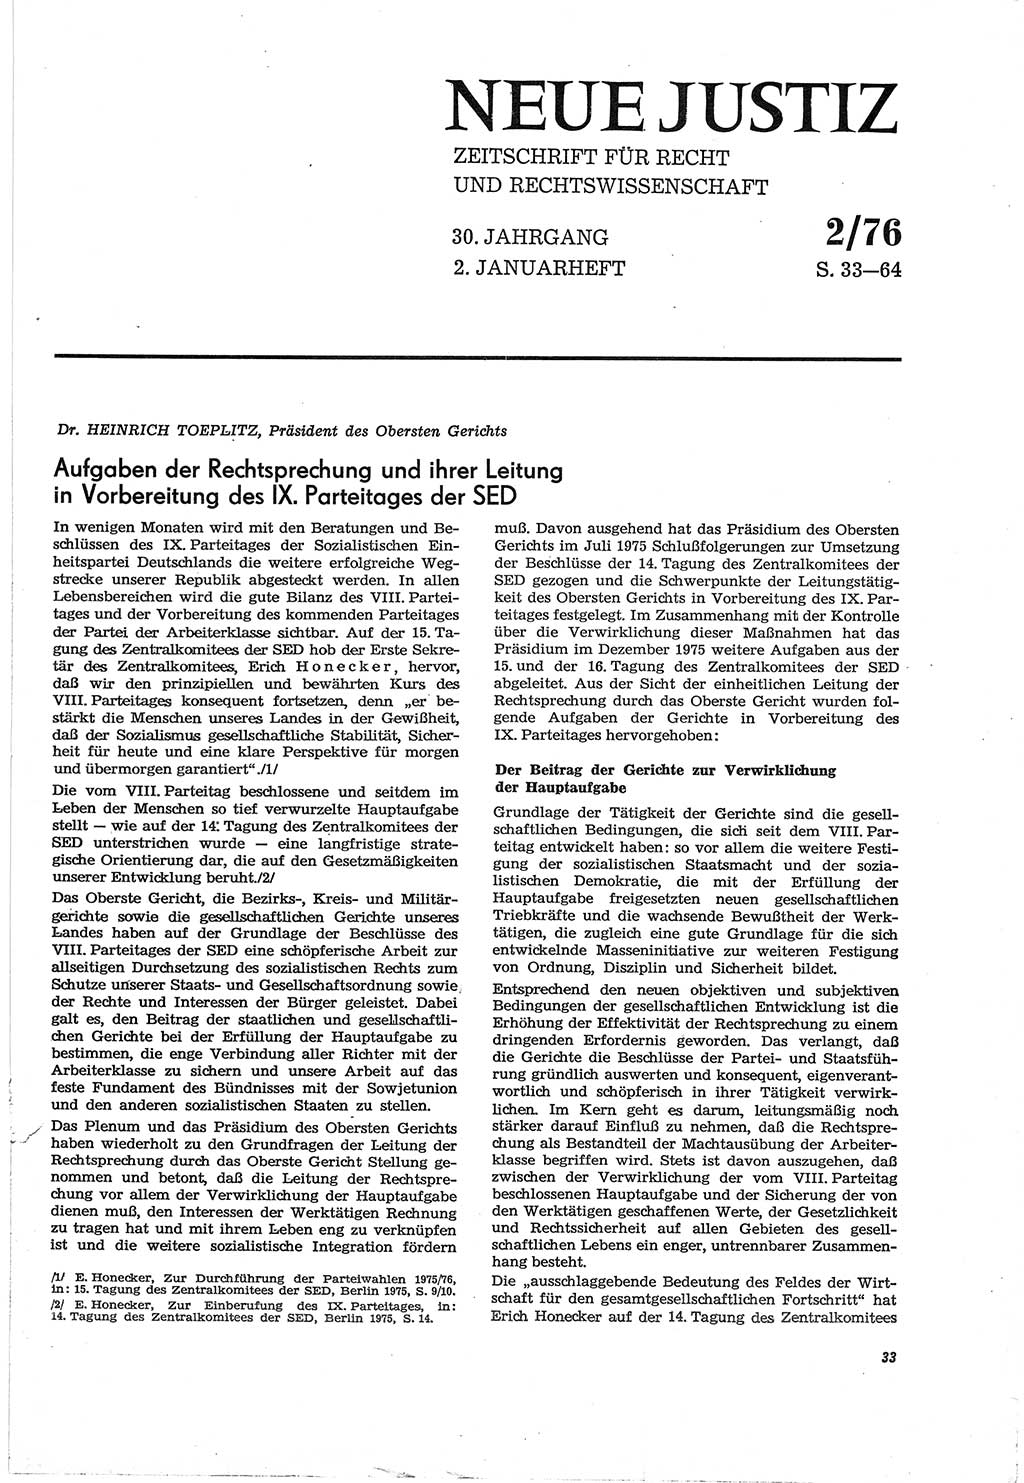 Neue Justiz (NJ), Zeitschrift für Recht und Rechtswissenschaft [Deutsche Demokratische Republik (DDR)], 30. Jahrgang 1976, Seite 33 (NJ DDR 1976, S. 33)